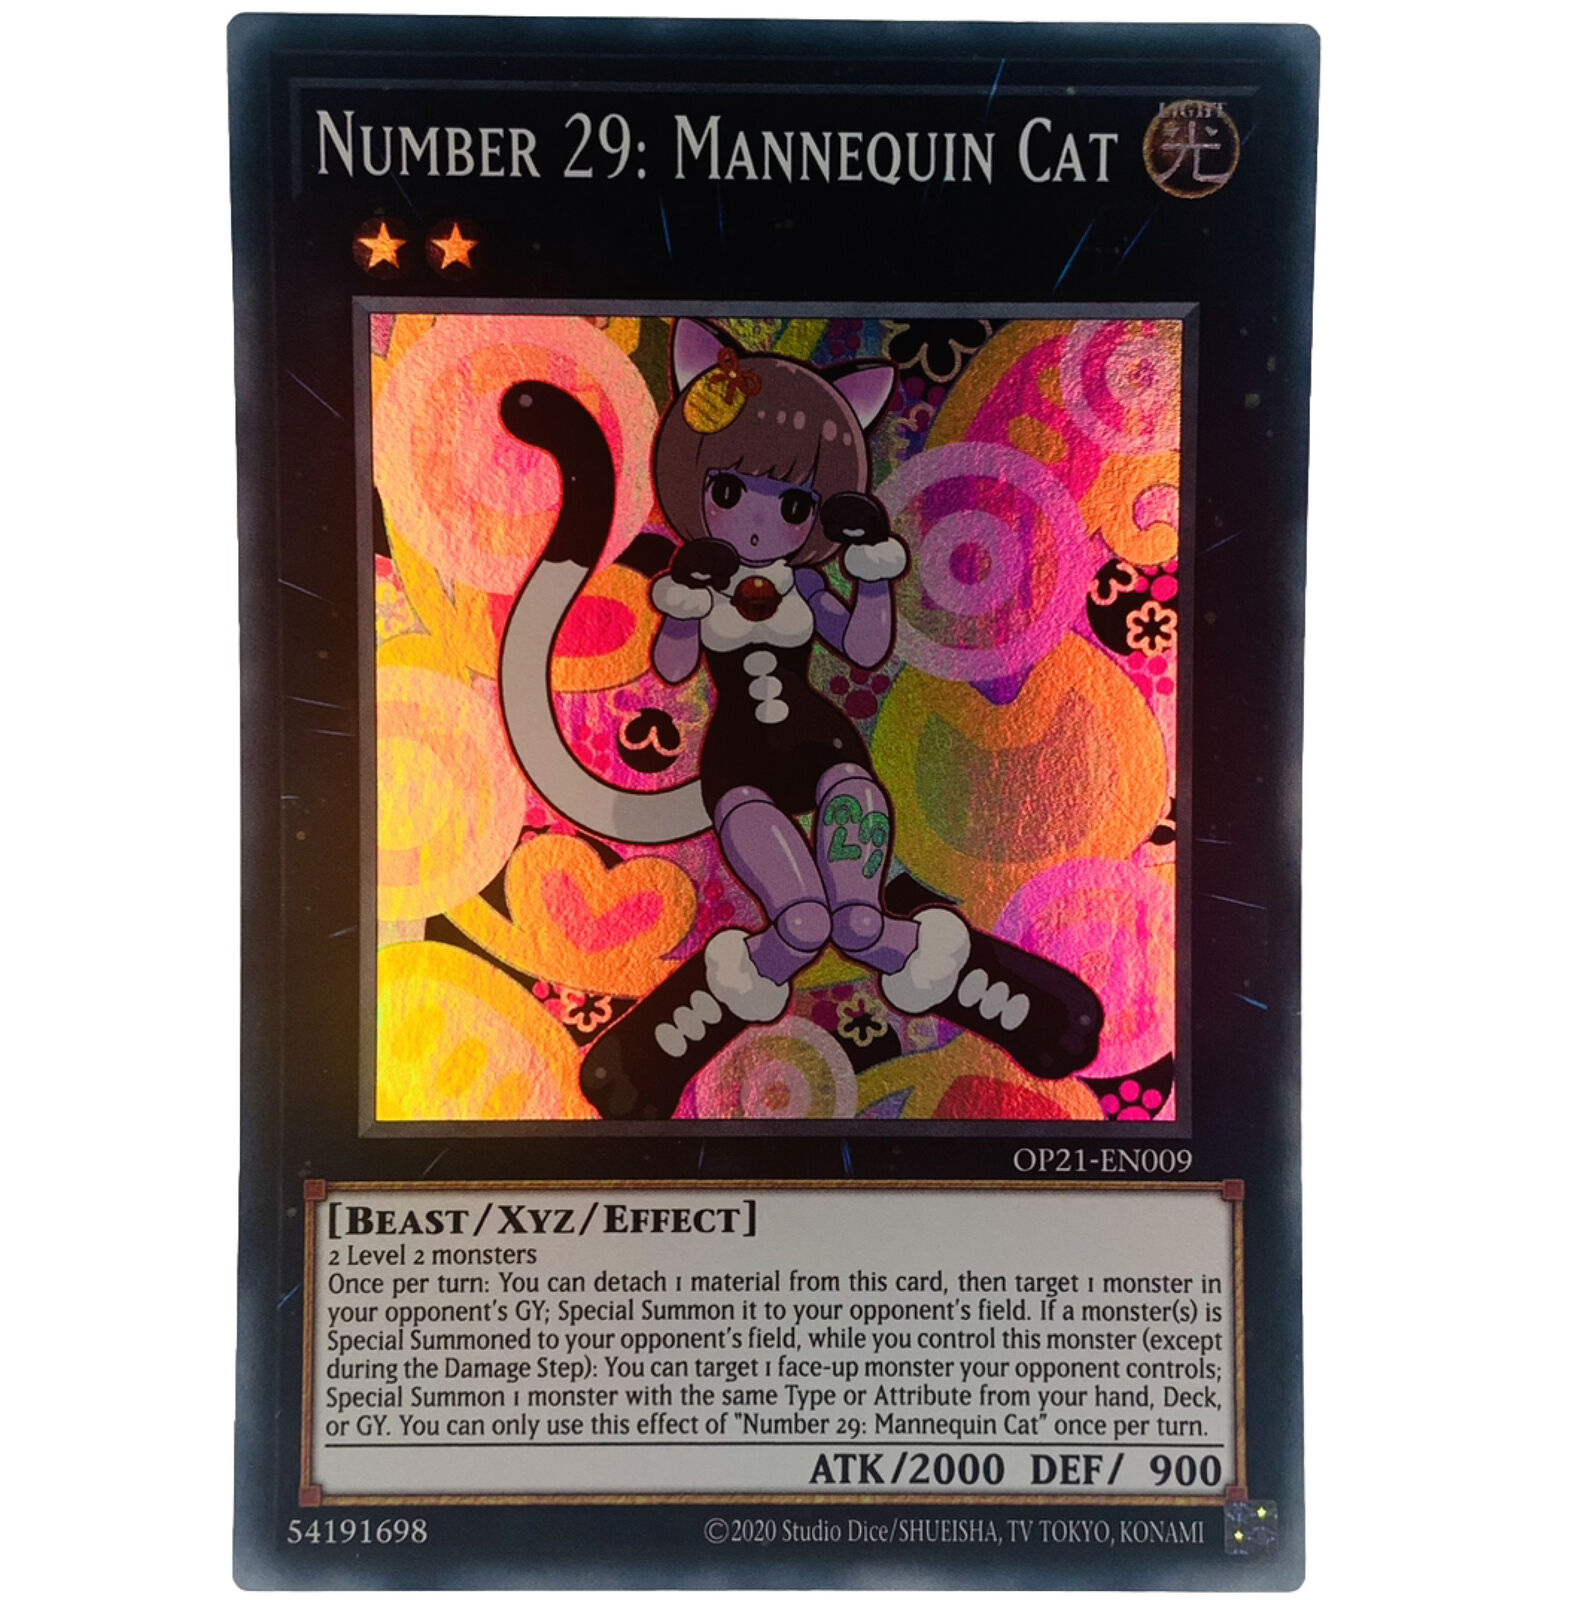 YUGIOH Number 29: Mannequin Cat OP21-EN009 OTS Pack Super Rare Card NM-MINT